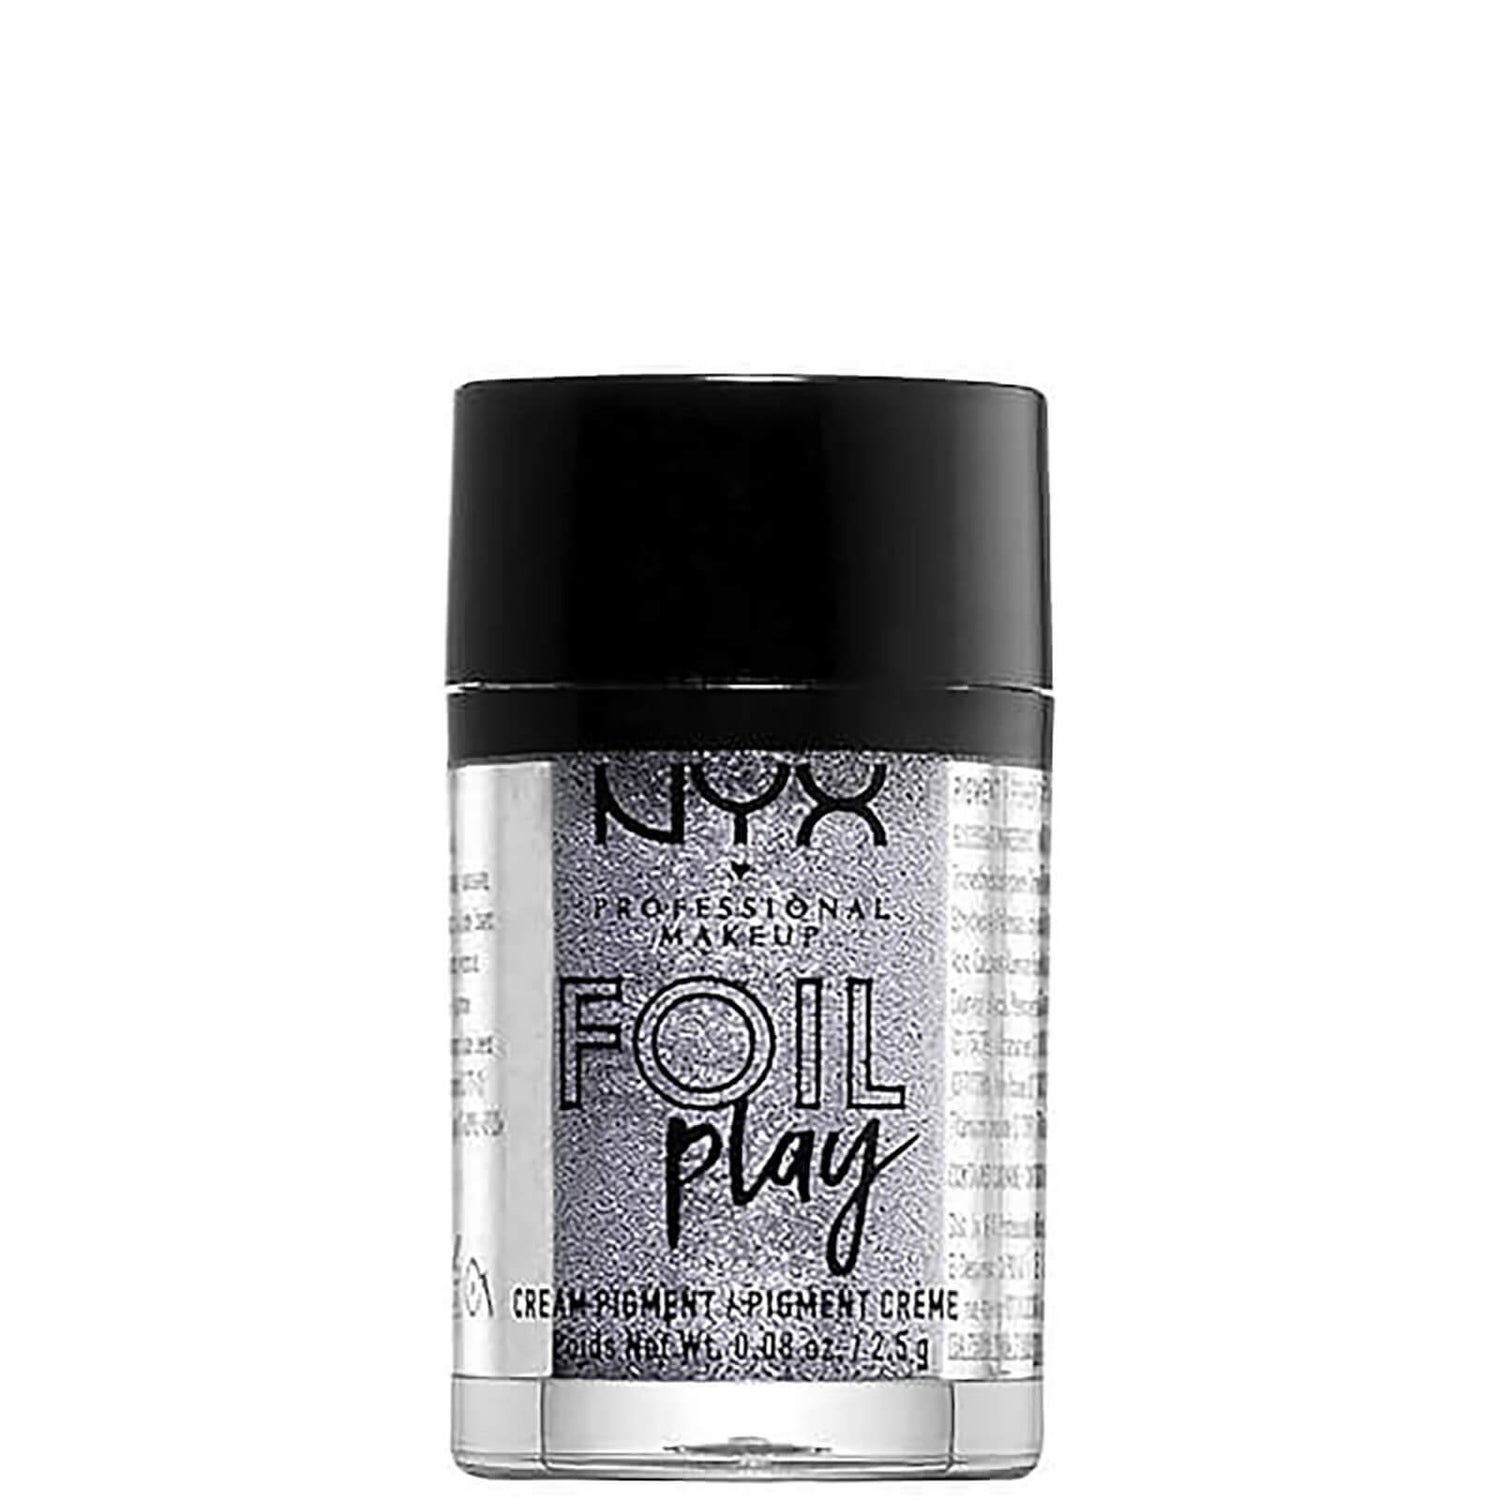 Кремовые тени для век NYX Professional Makeup Foil Play Cream Pigment Eyeshadow (различные оттенки)